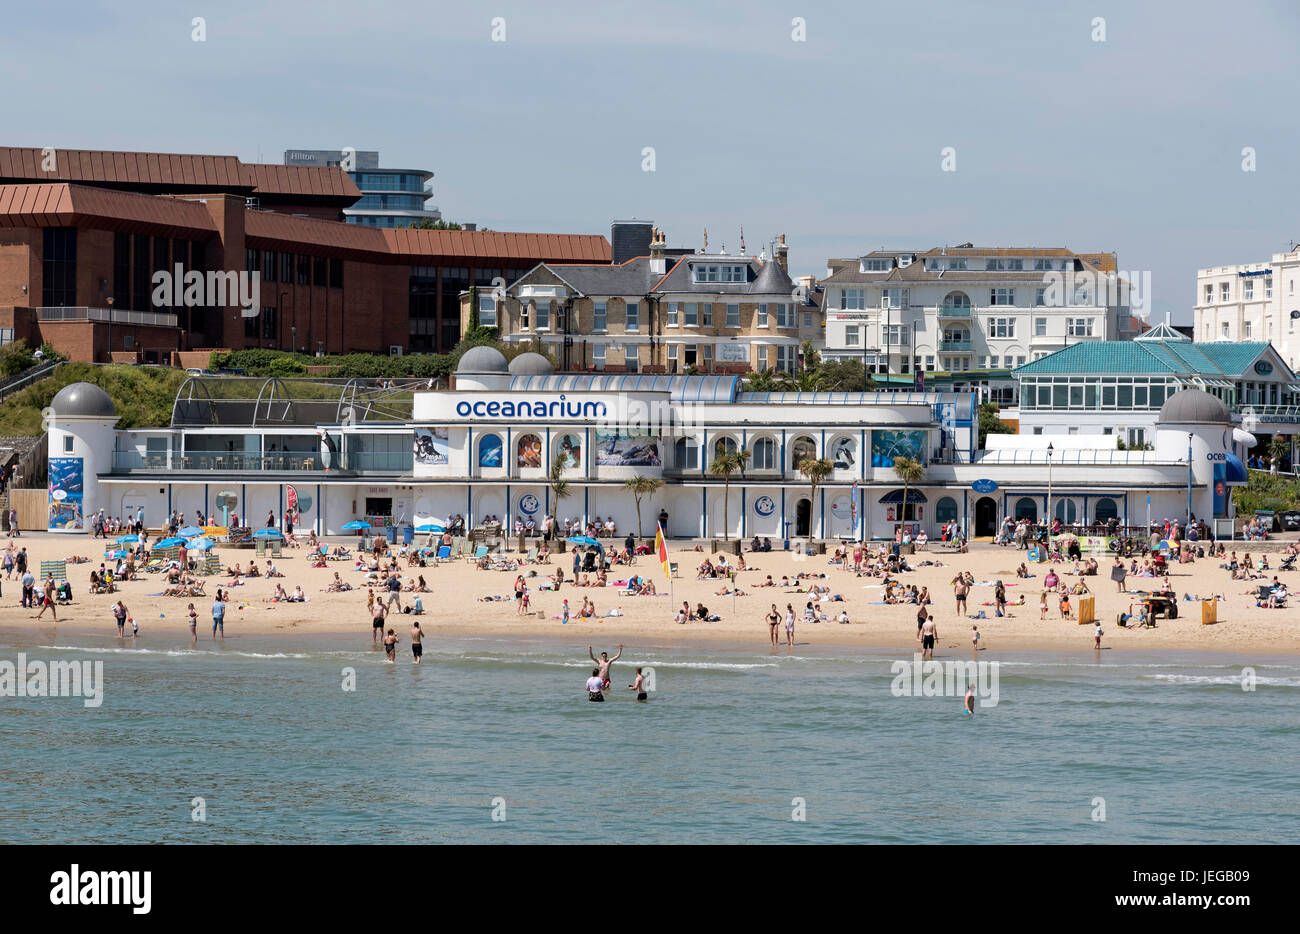 Das Bournemouth International Centre und Ozeanarium Veranstaltungsorte mit Blick auf den Strand bei diesem englischen Seebad. Stockfoto